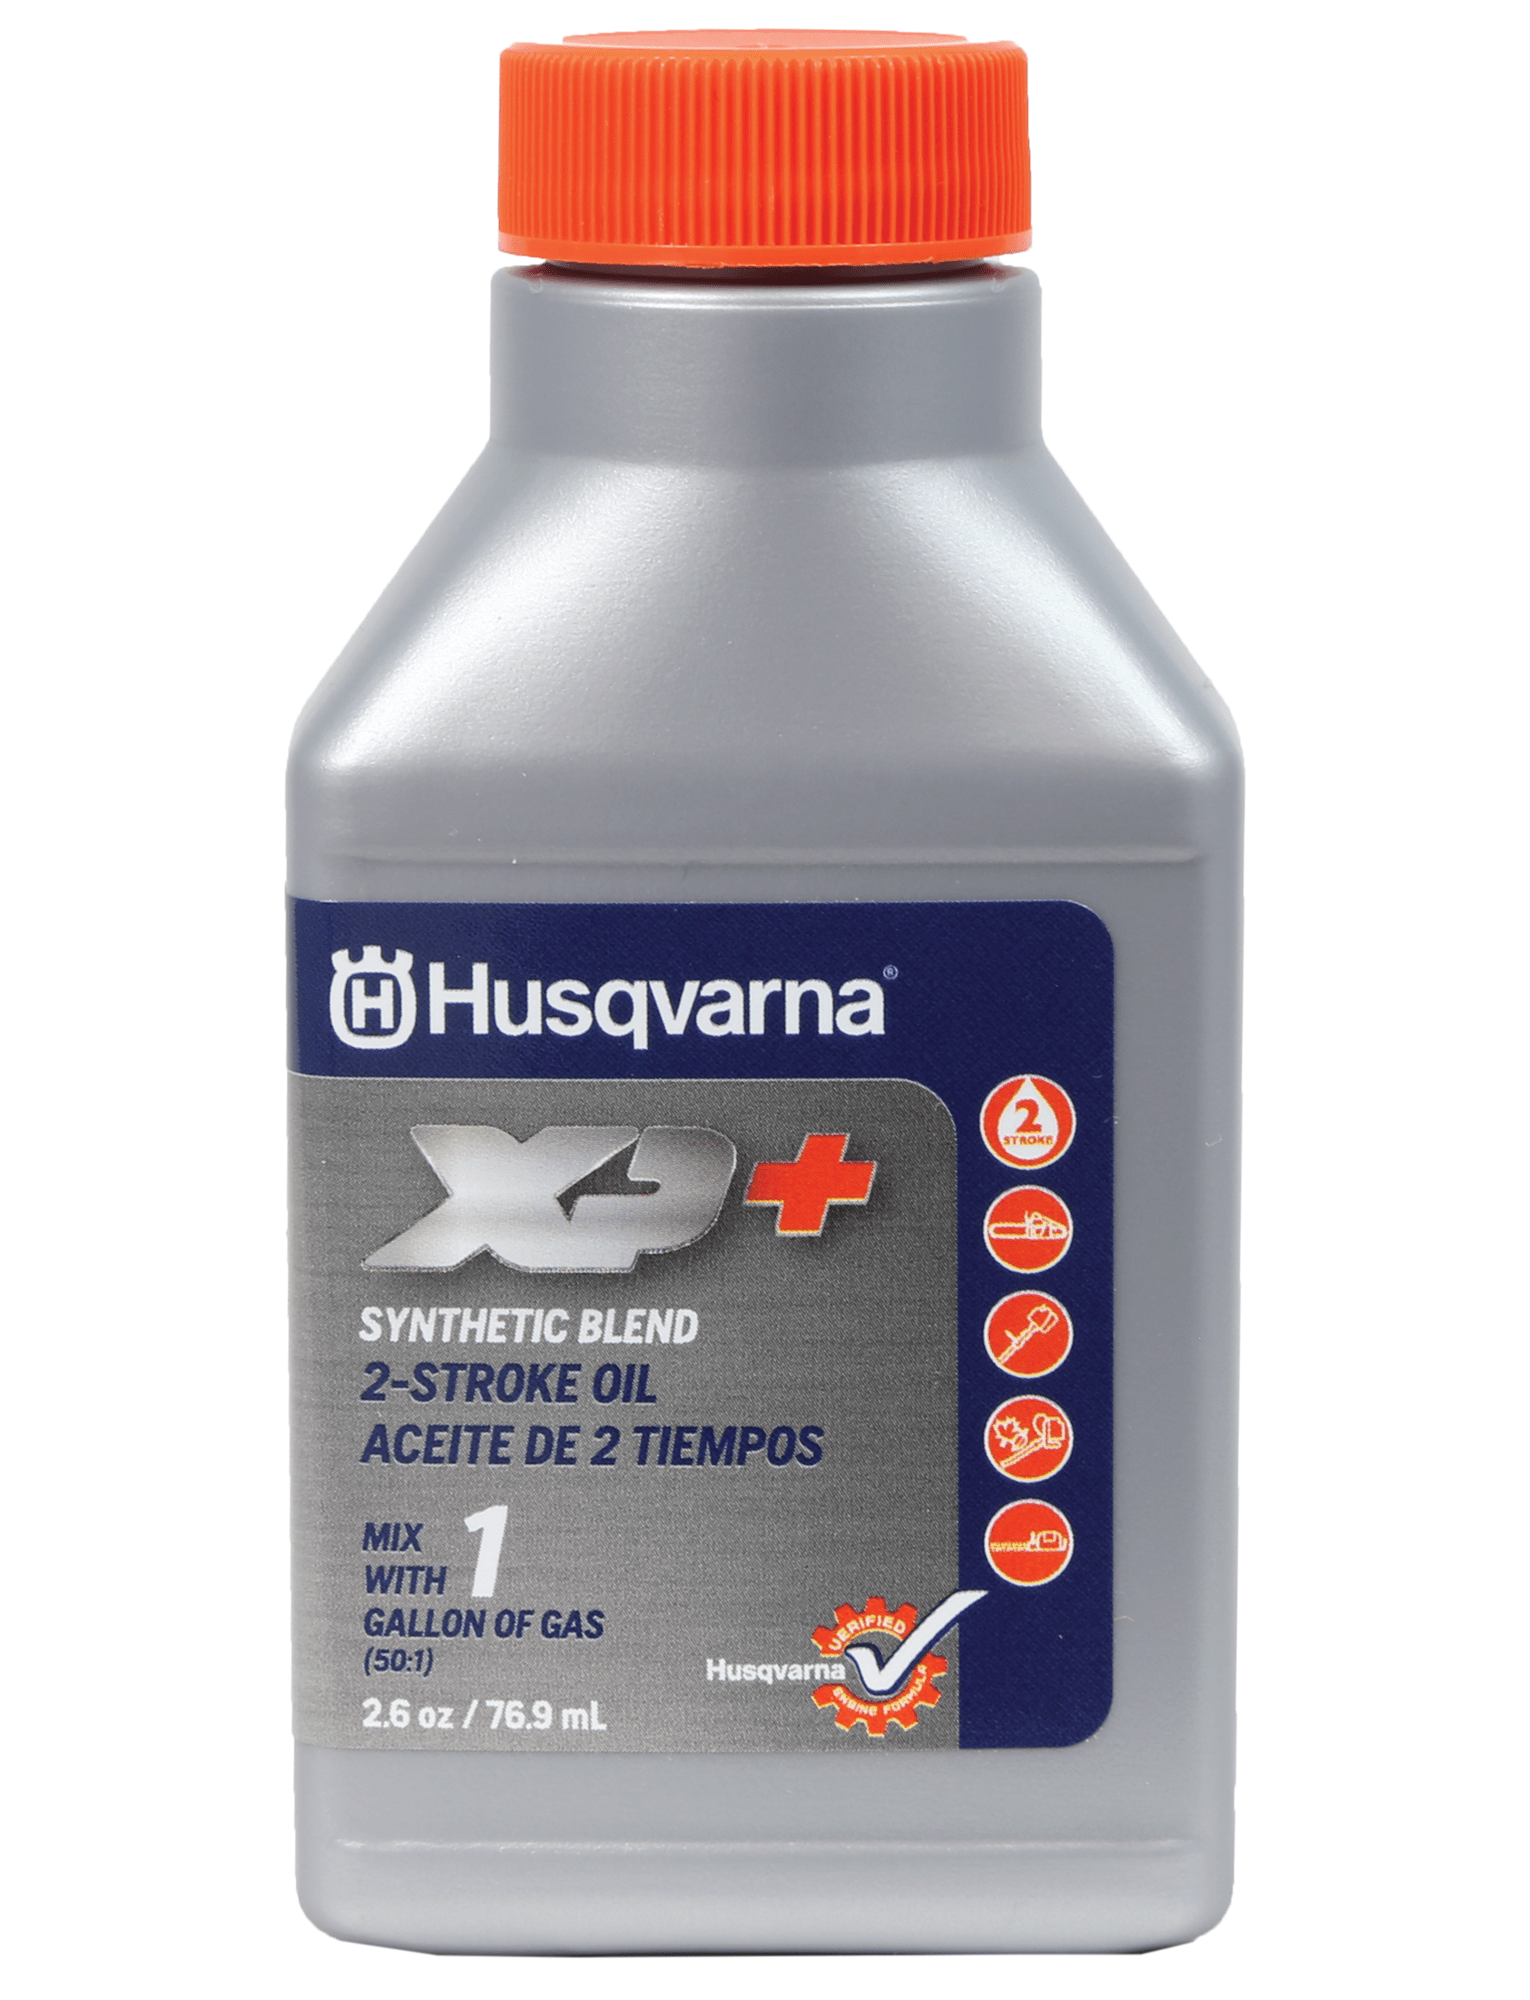 Husqvarna XP+ 2-Stroke Oil - 200 mL 6 Pack